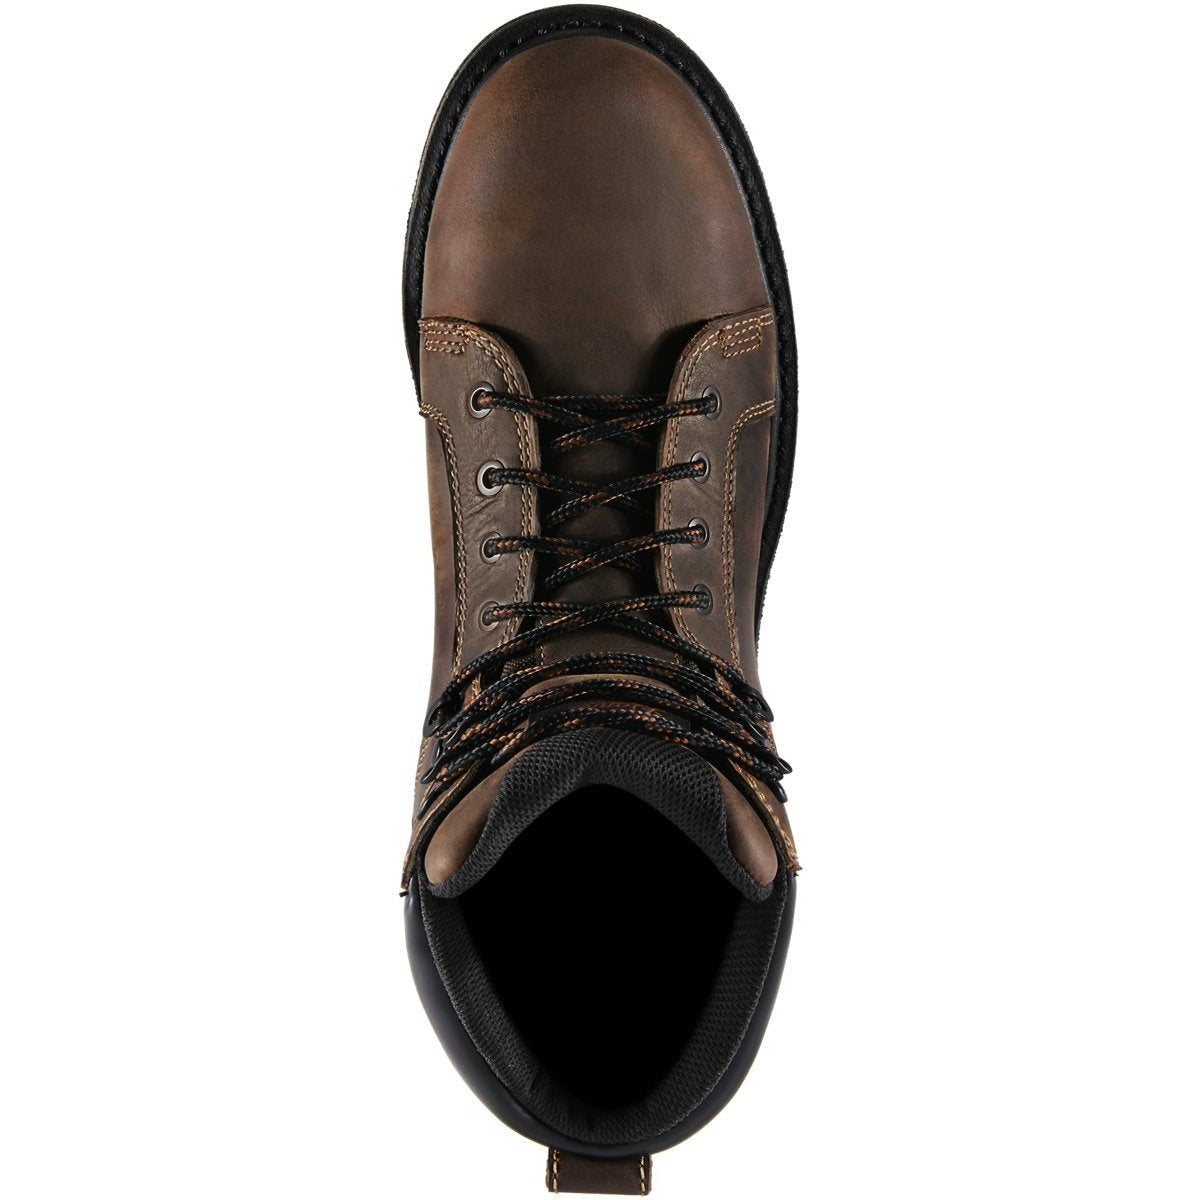 Danner Men's Steel Yard 6" ST Slip Resistant Work Boot -Brown- 12537  - Overlook Boots